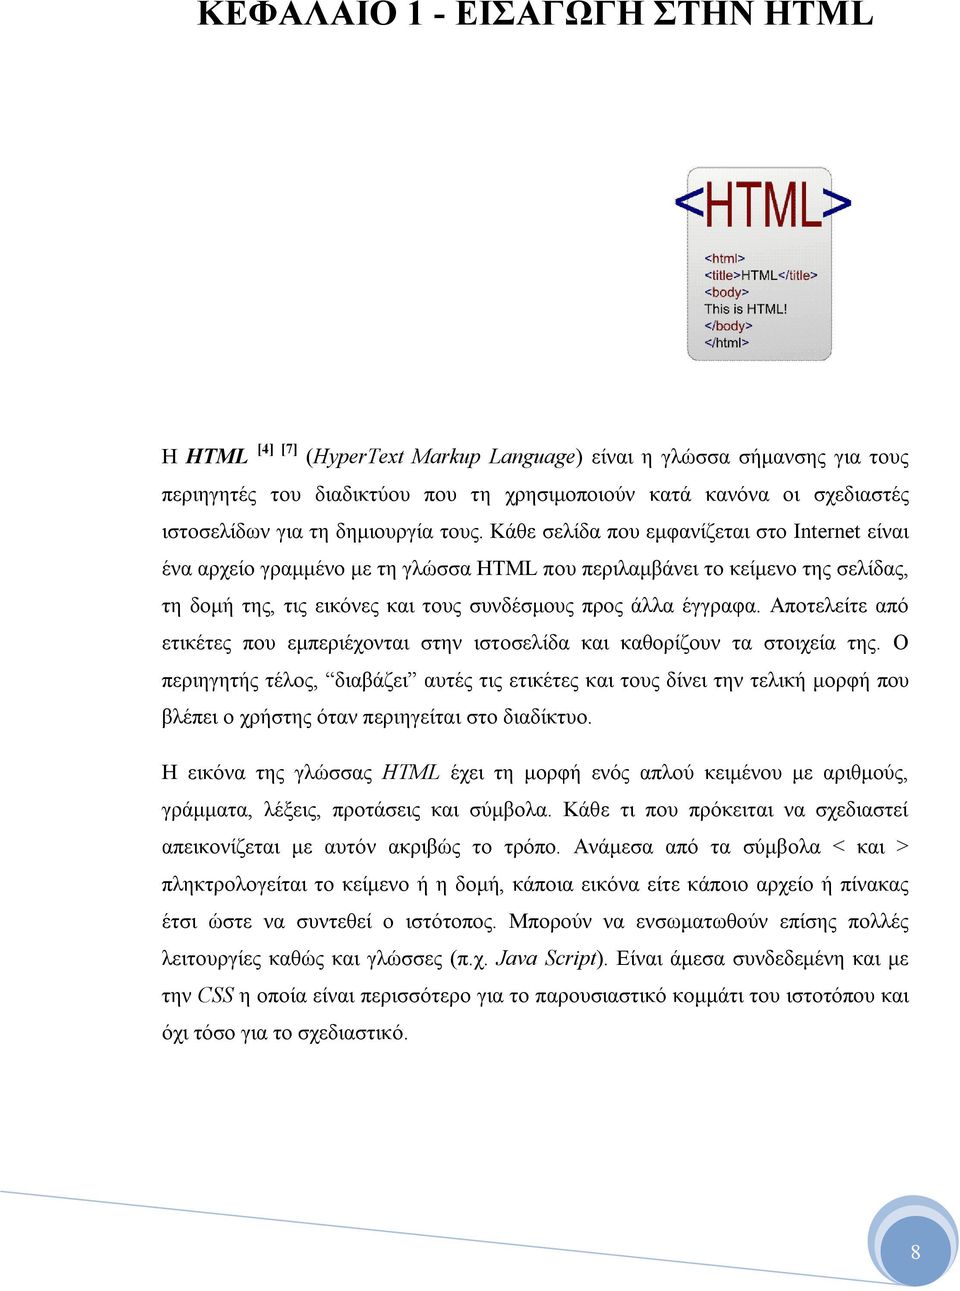 Κάθε σελίδα που εμφανίζεται στο Internet είναι ένα αρχείο γραμμένο με τη γλώσσα HTML που περιλαμβάνει το κείμενο της σελίδας, τη δομή της, τις εικόνες και τους συνδέσμους προς άλλα έγγραφα.